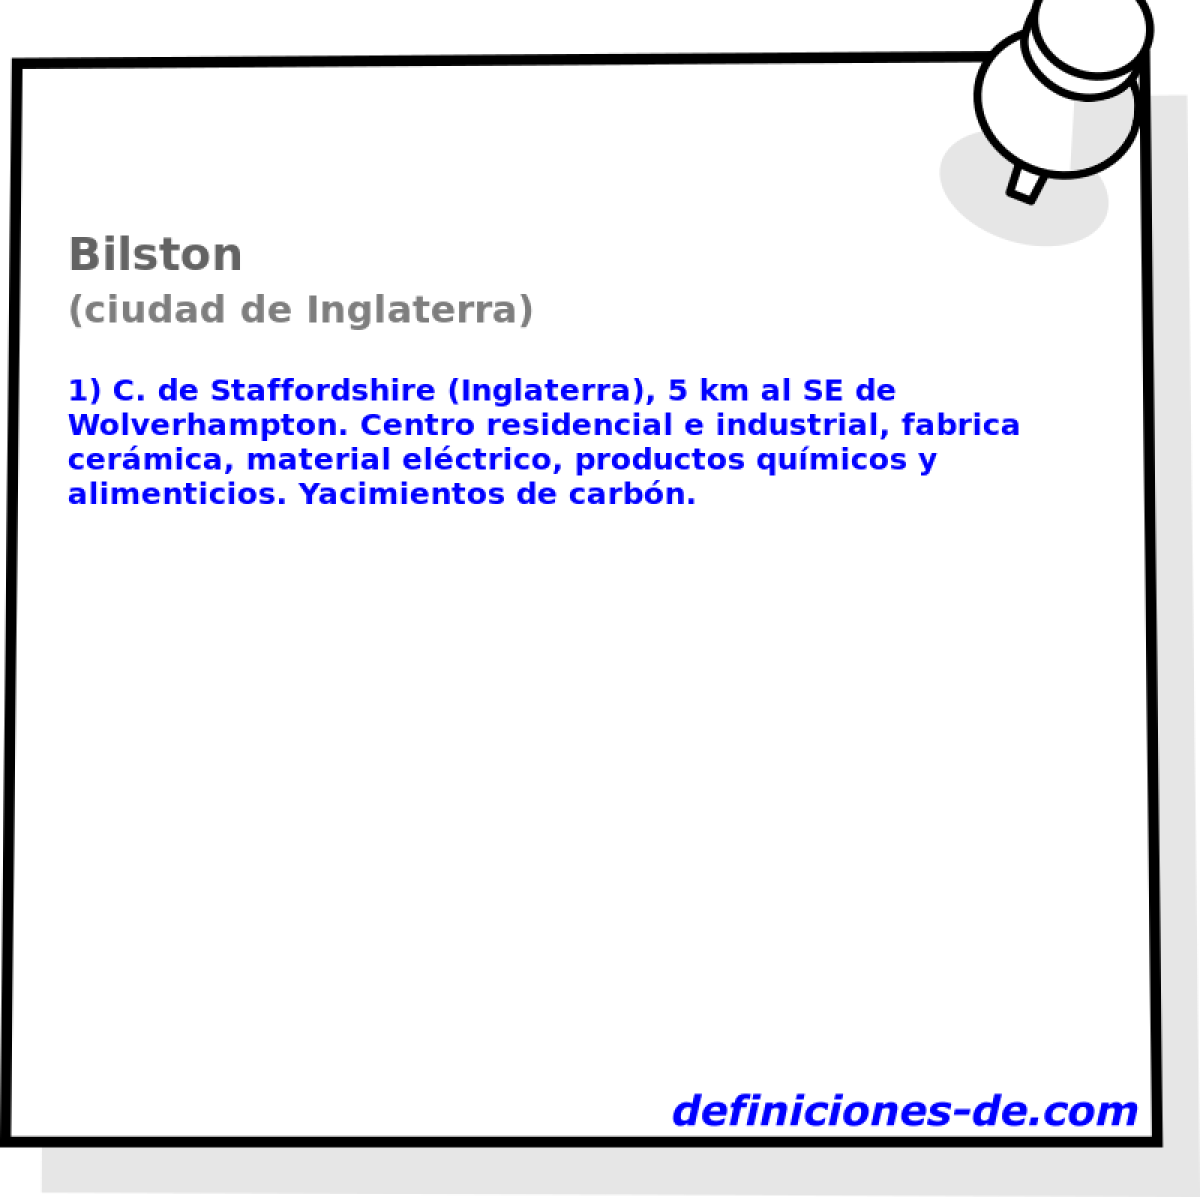 Bilston (ciudad de Inglaterra)